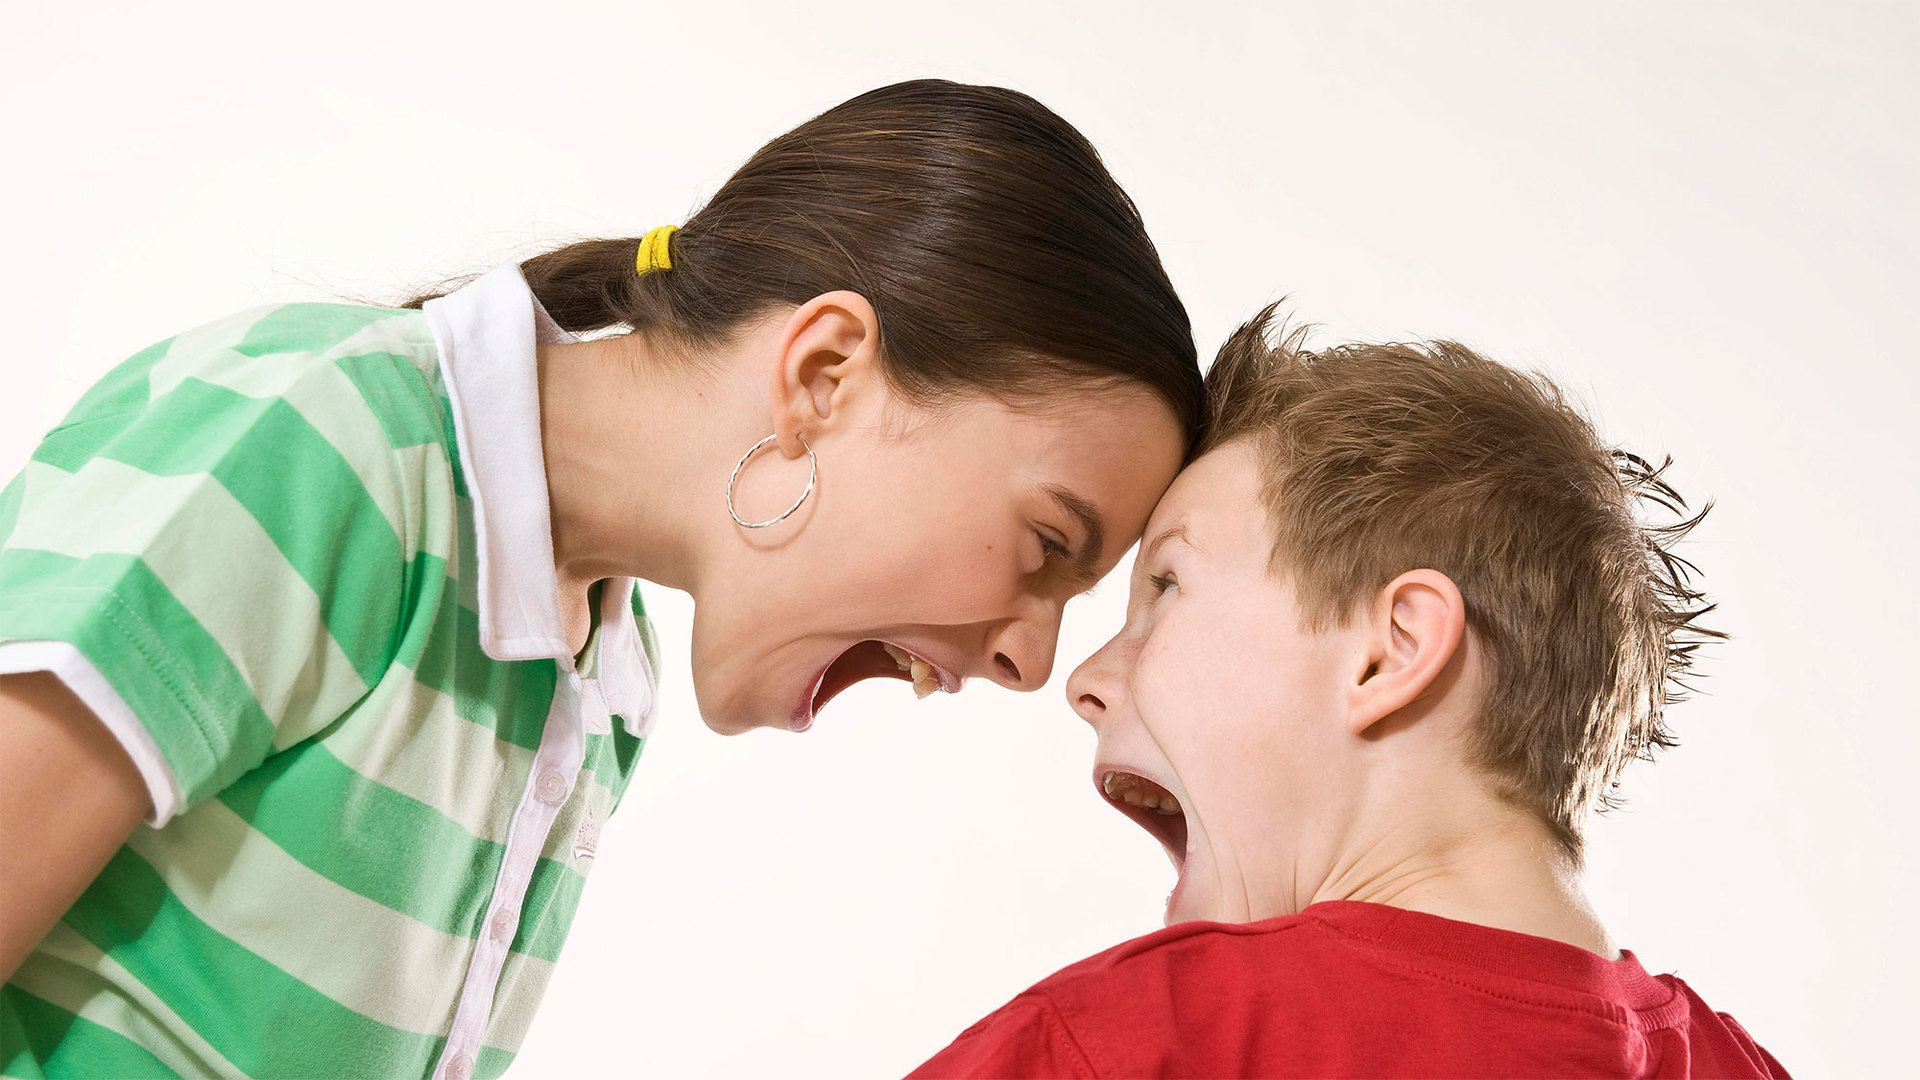 Эмоциональное поведение родителей. Агрессия подростков. Эмоциональный подросток. Юношеская агрессия. Конфликт родителей и детей.